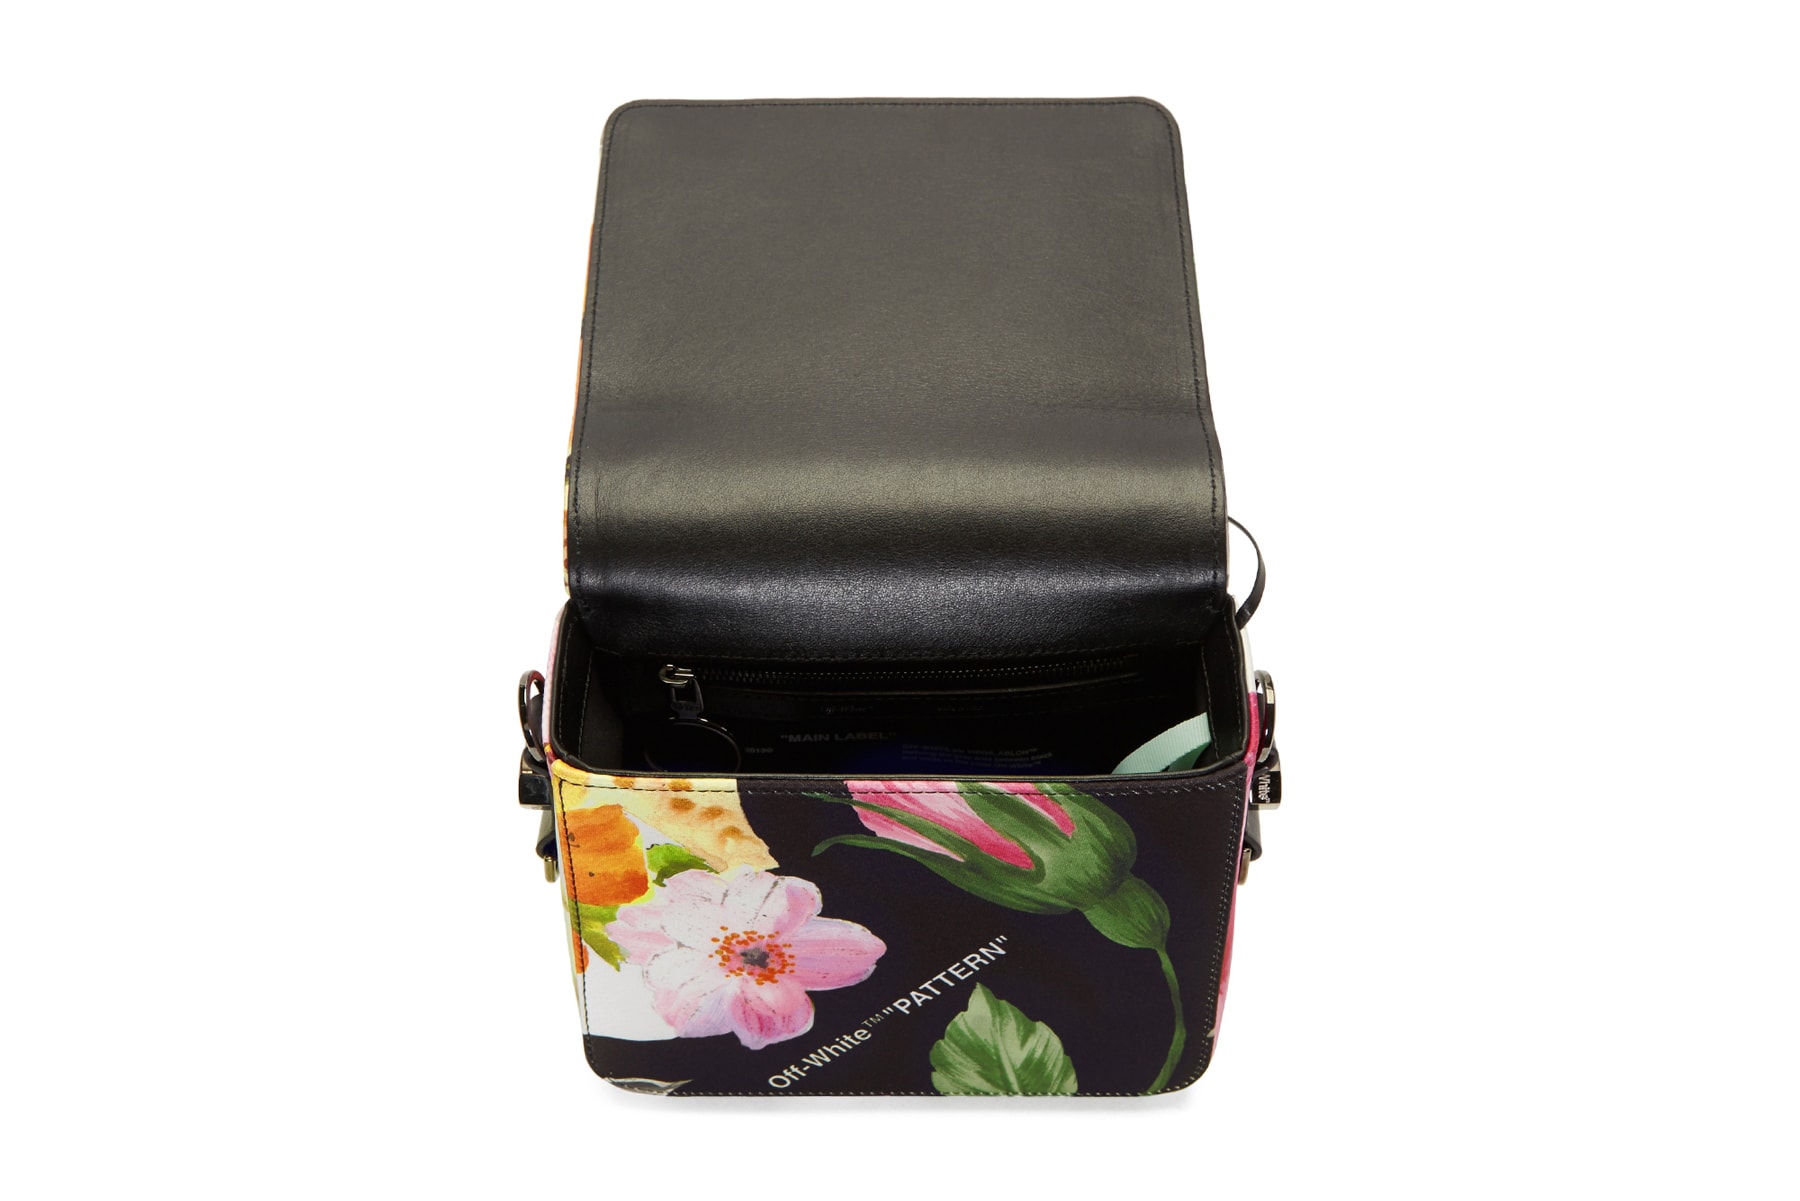 off white virgil abloh floral binder clip bag interior lining satin leather